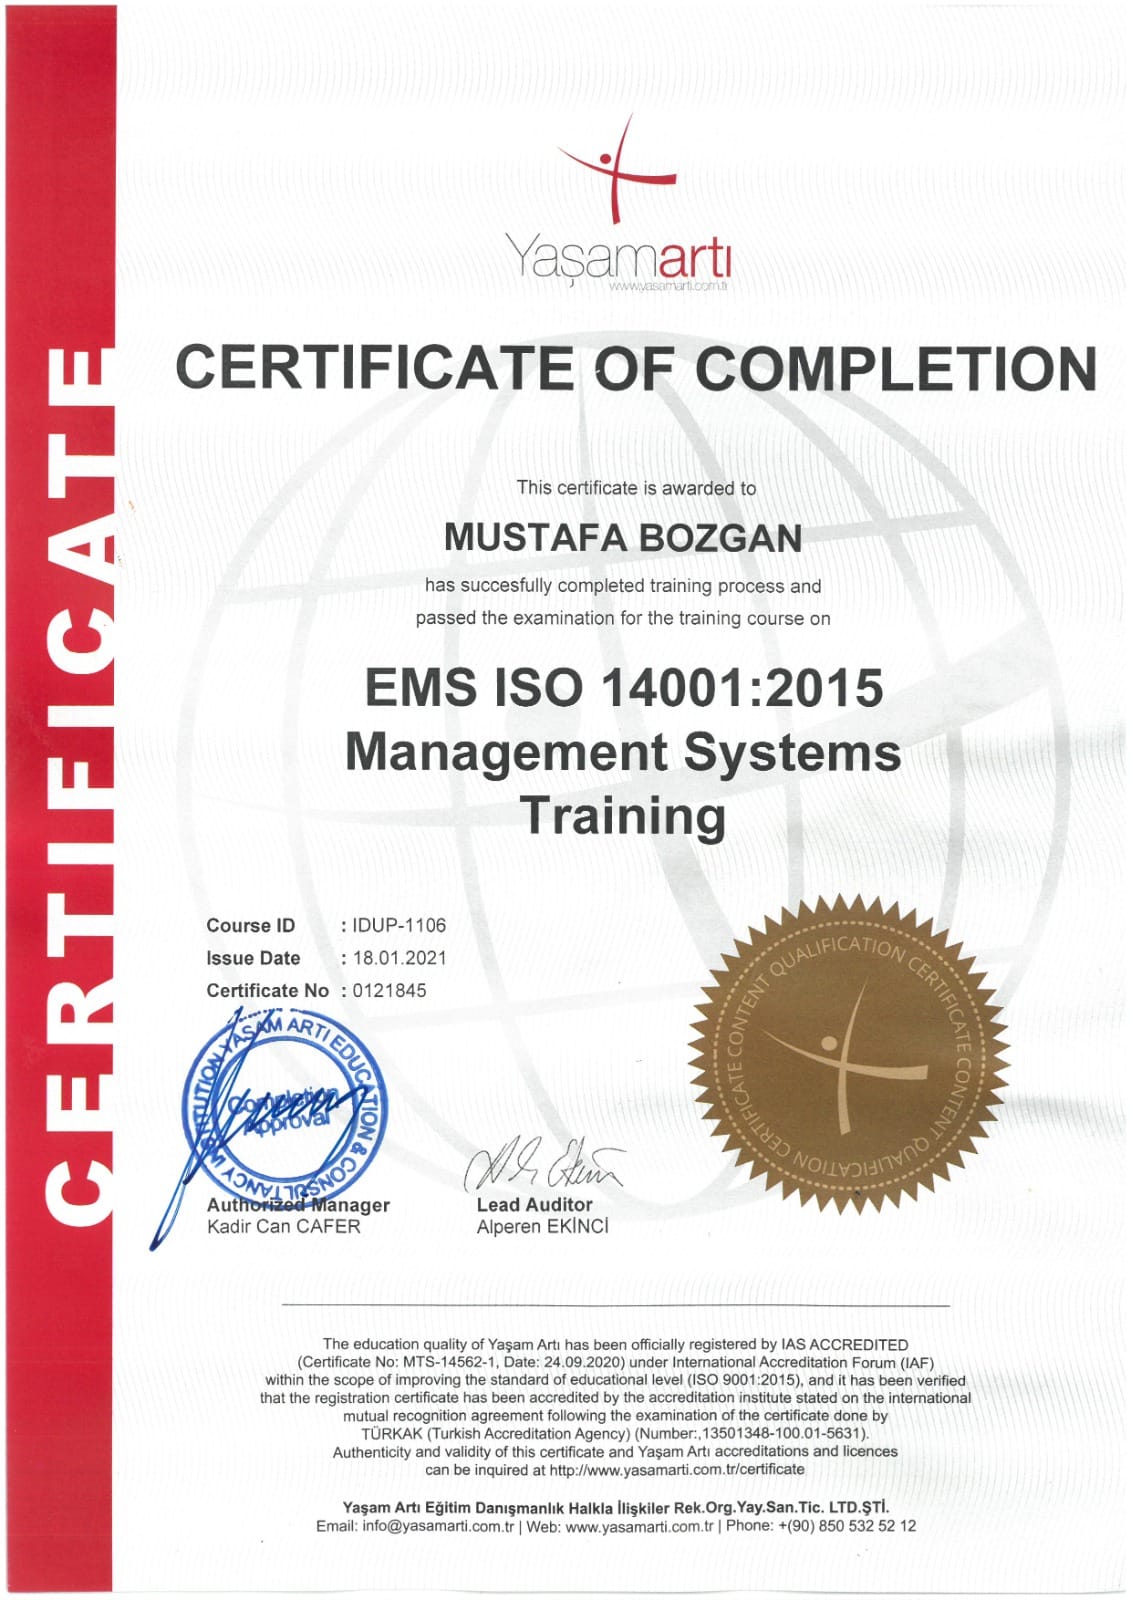 iso 14001 sertifikası